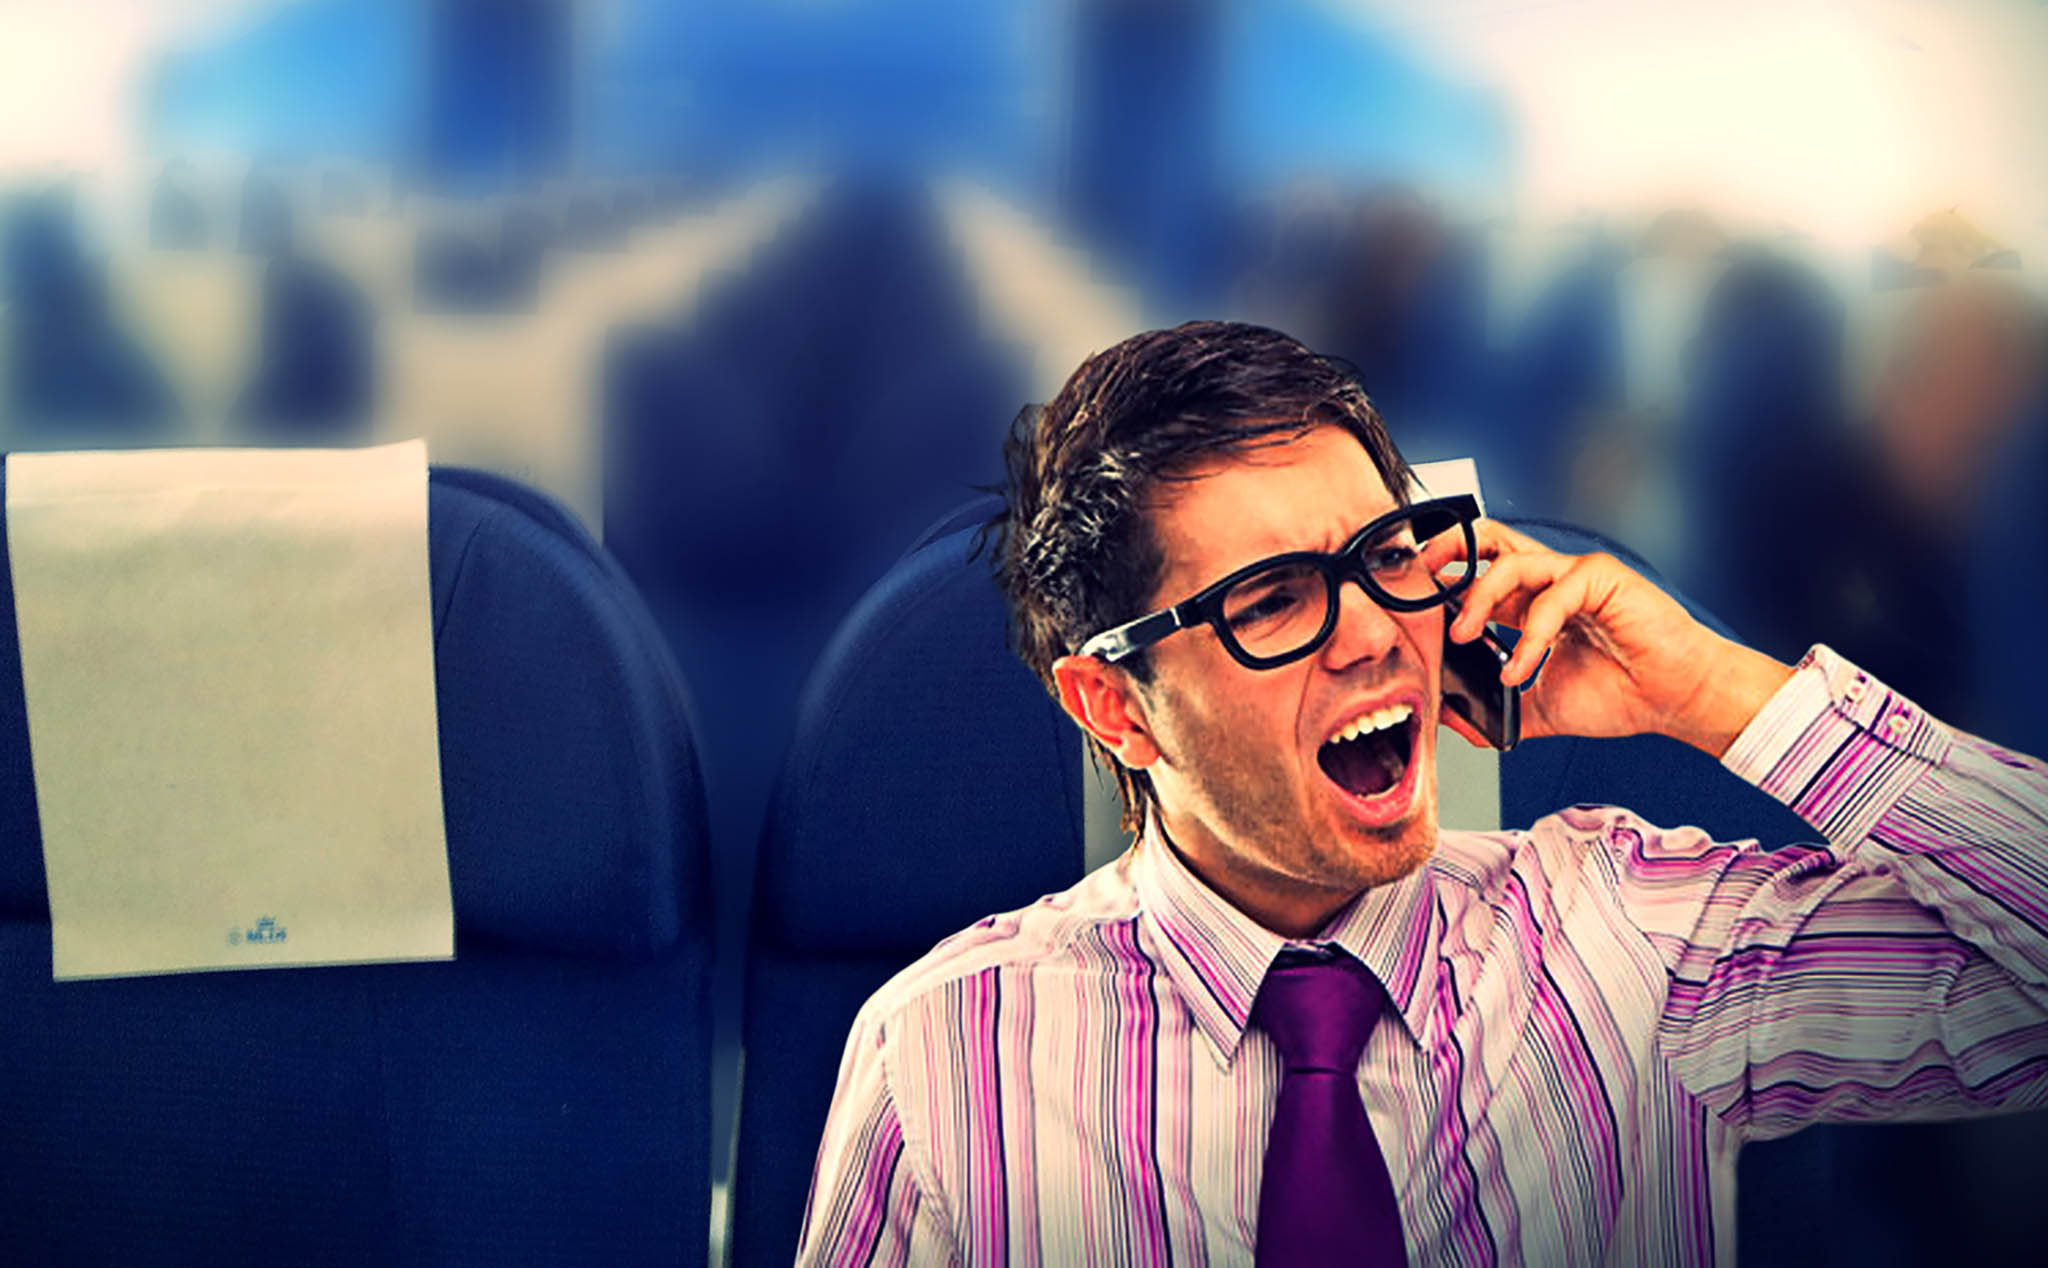 Không phải mất sóng cũng không gây nhiễu, đâu là lý do khiến bạn bị cấm gọi điện thoại trên máy bay?